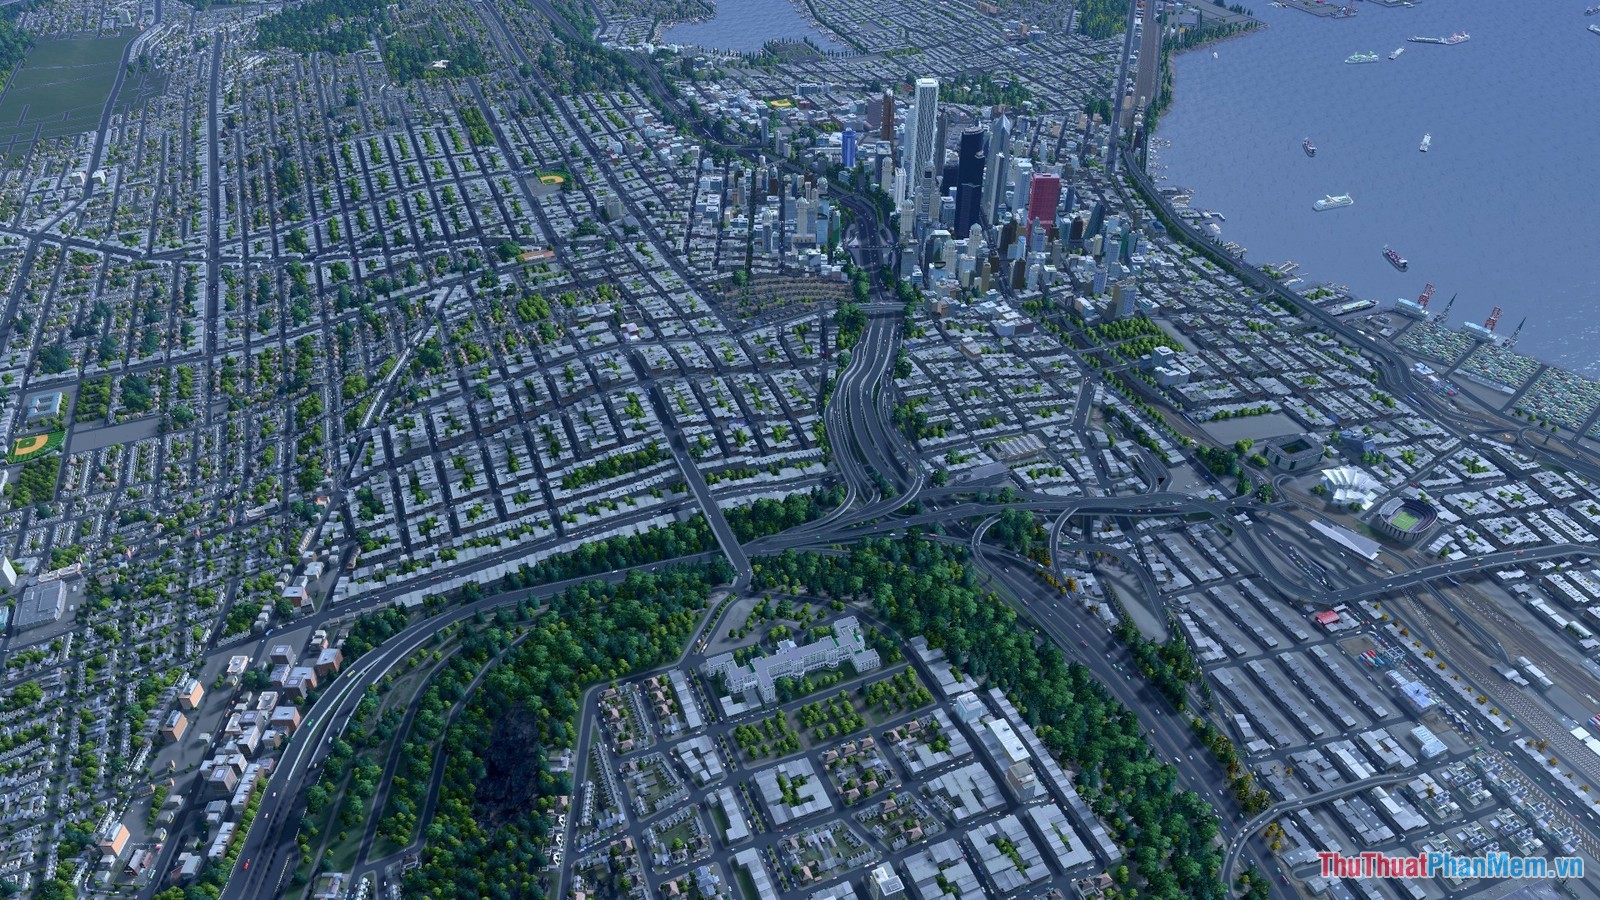 Top 10 Game xây dựng thành phố hay nhất cho PC